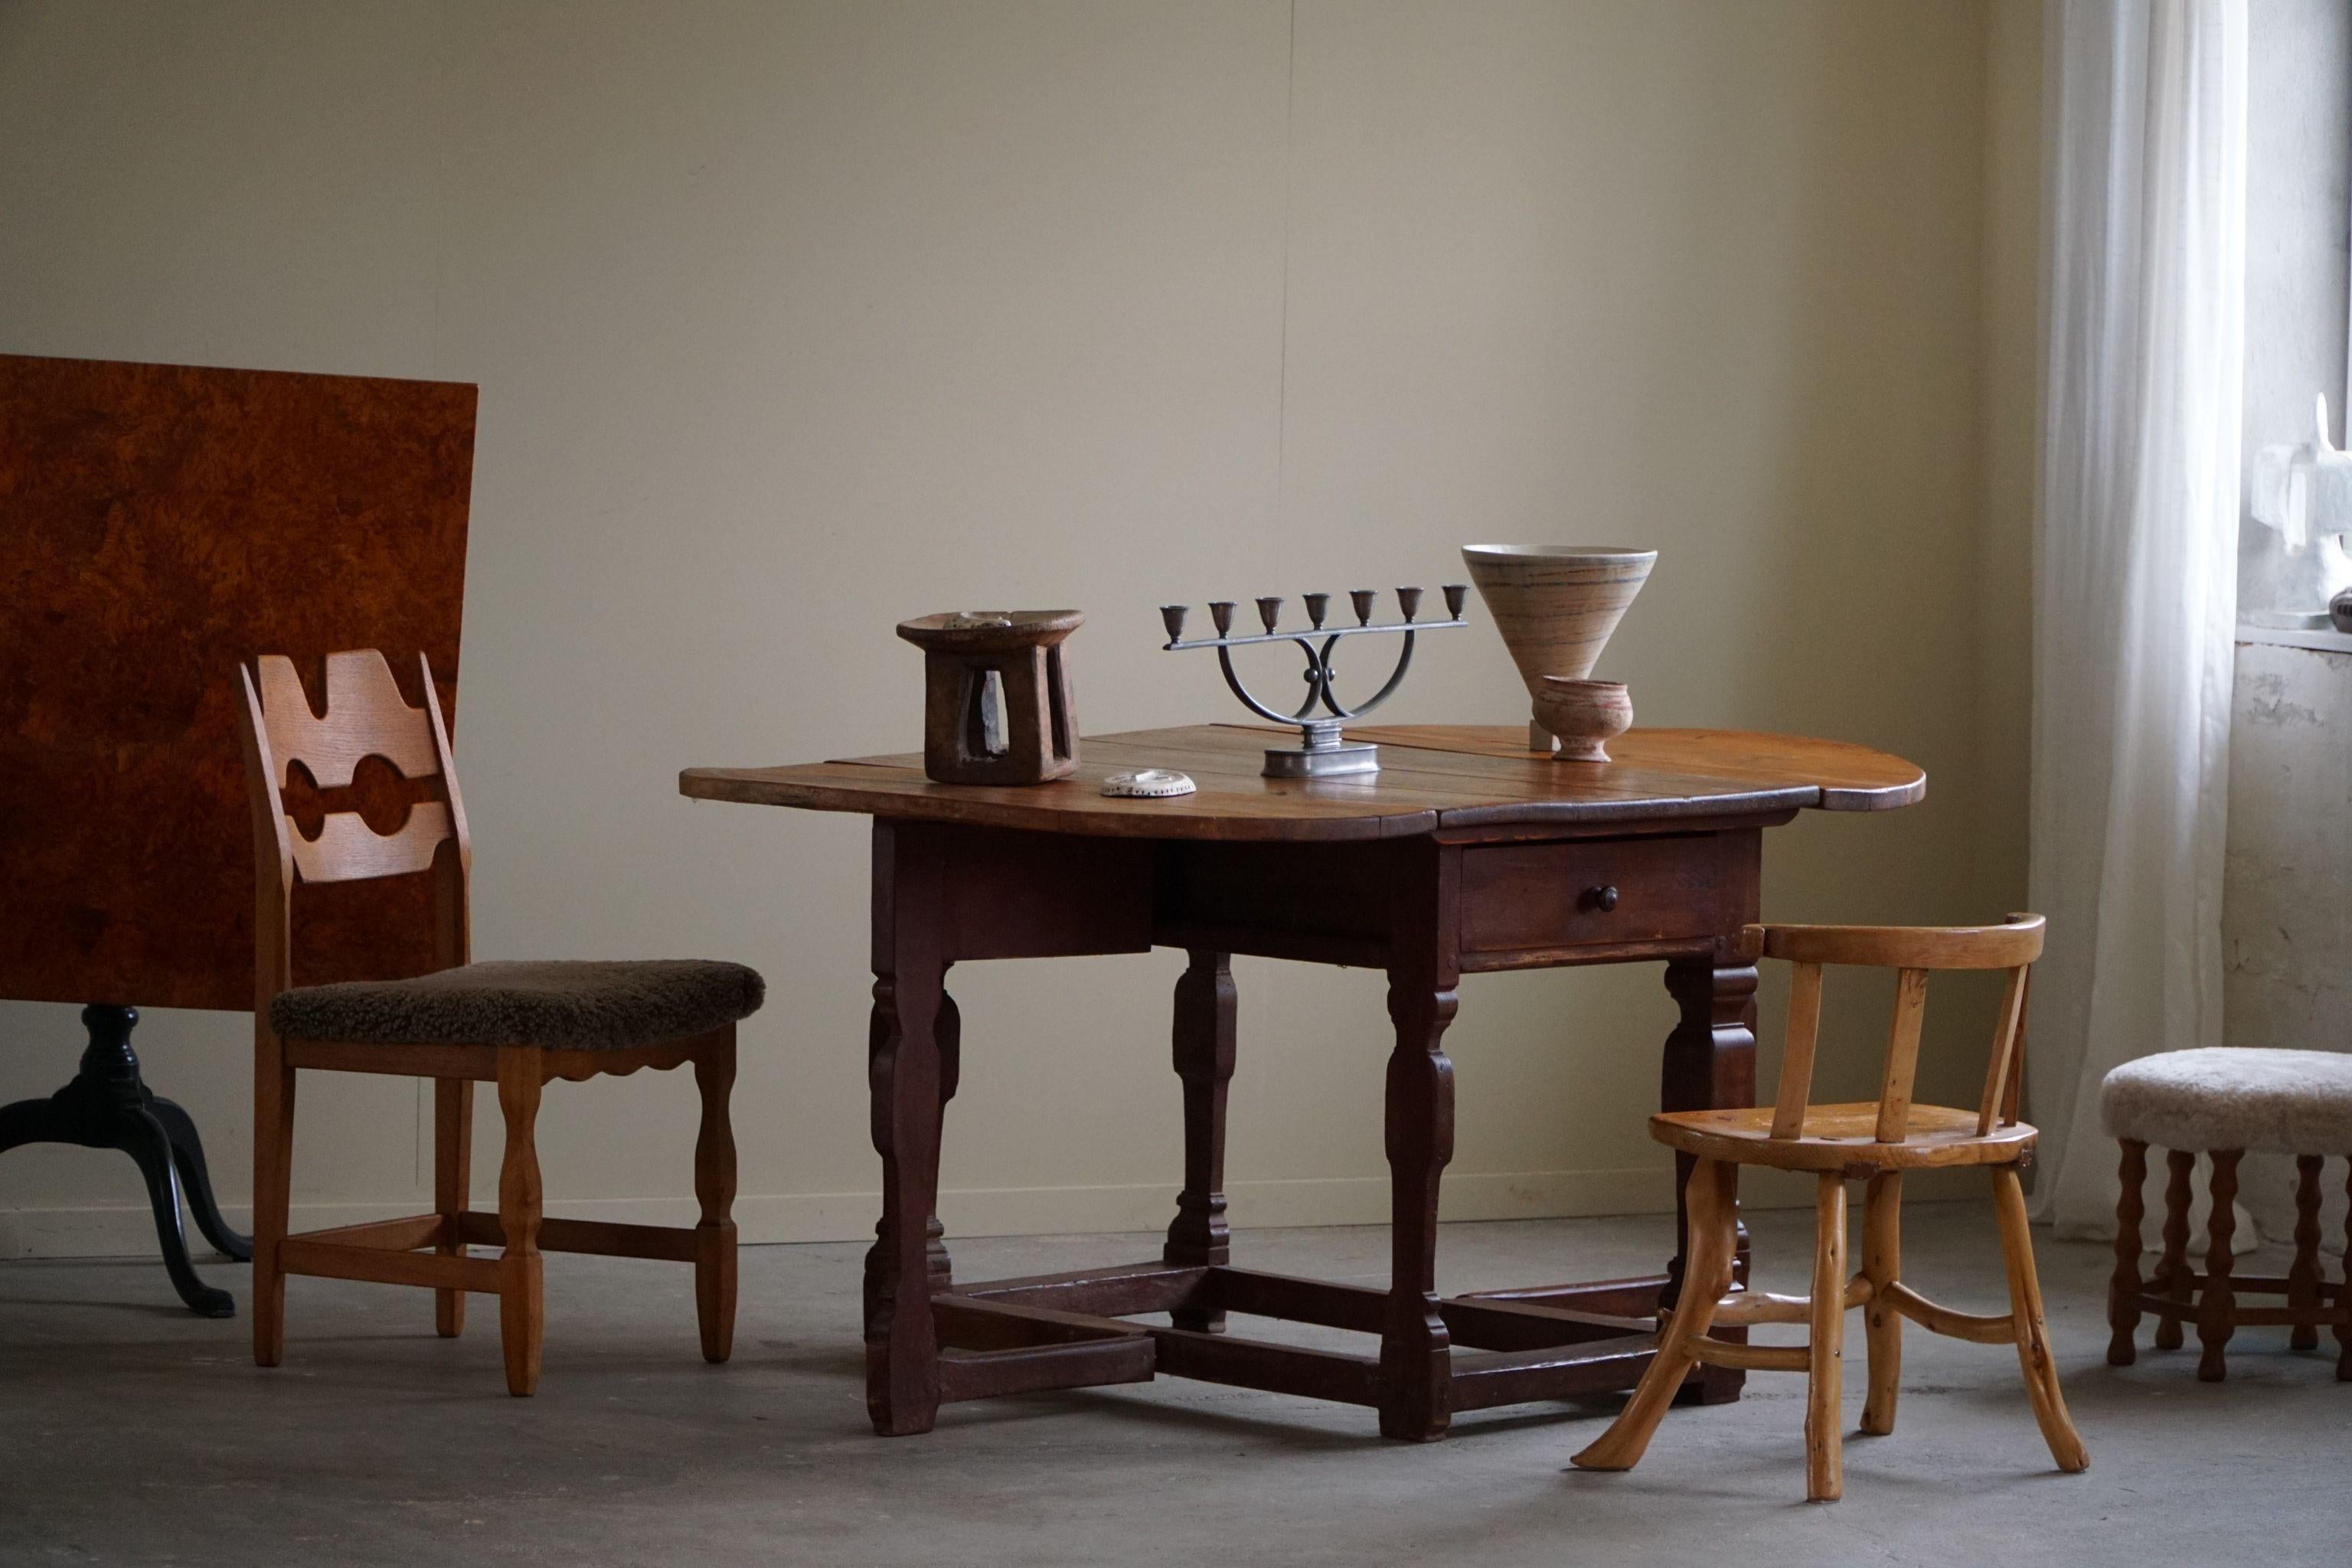 Dieser antike dänische Barocktisch mit hängenden Flügeln aus dem 18. Jahrhundert ist ein charmantes Stück Geschichte. Er ist aus massivem Kiefernholz gefertigt und zeigt die rustikale Schönheit des Holzes mit seinen warmen Tönen und natürlichen